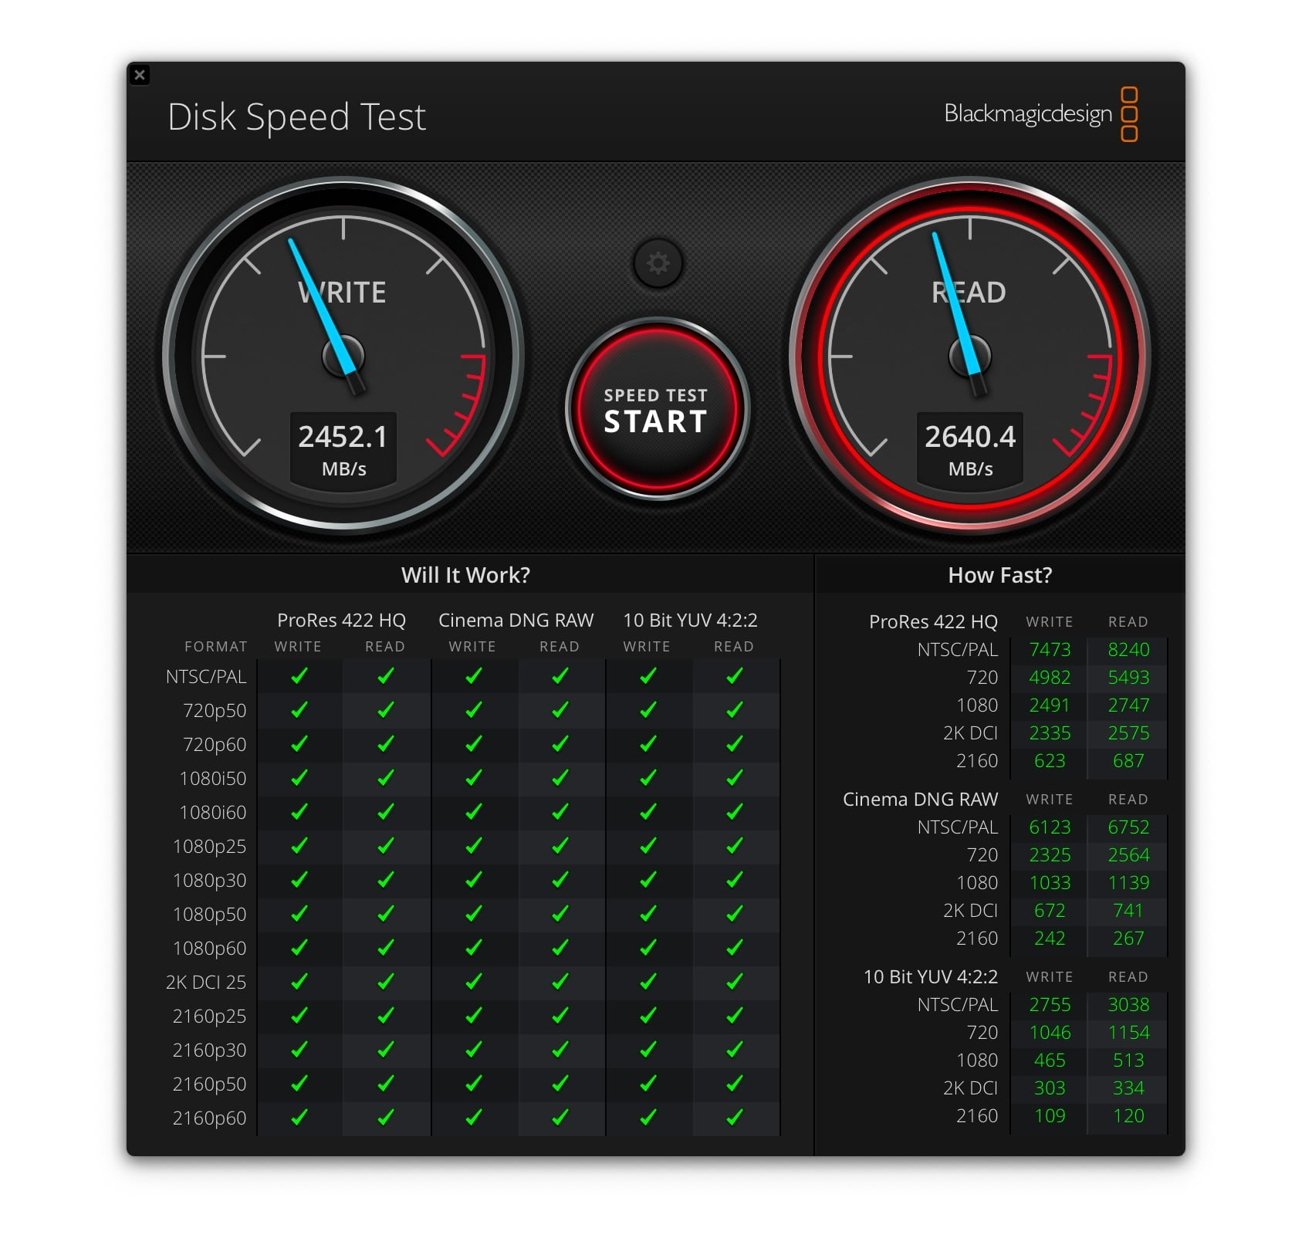 Resultados de la prueba GigaDrive Pro 1 TB dentro de la Prueba de velocidad de disco de BlackMagicDesign. 